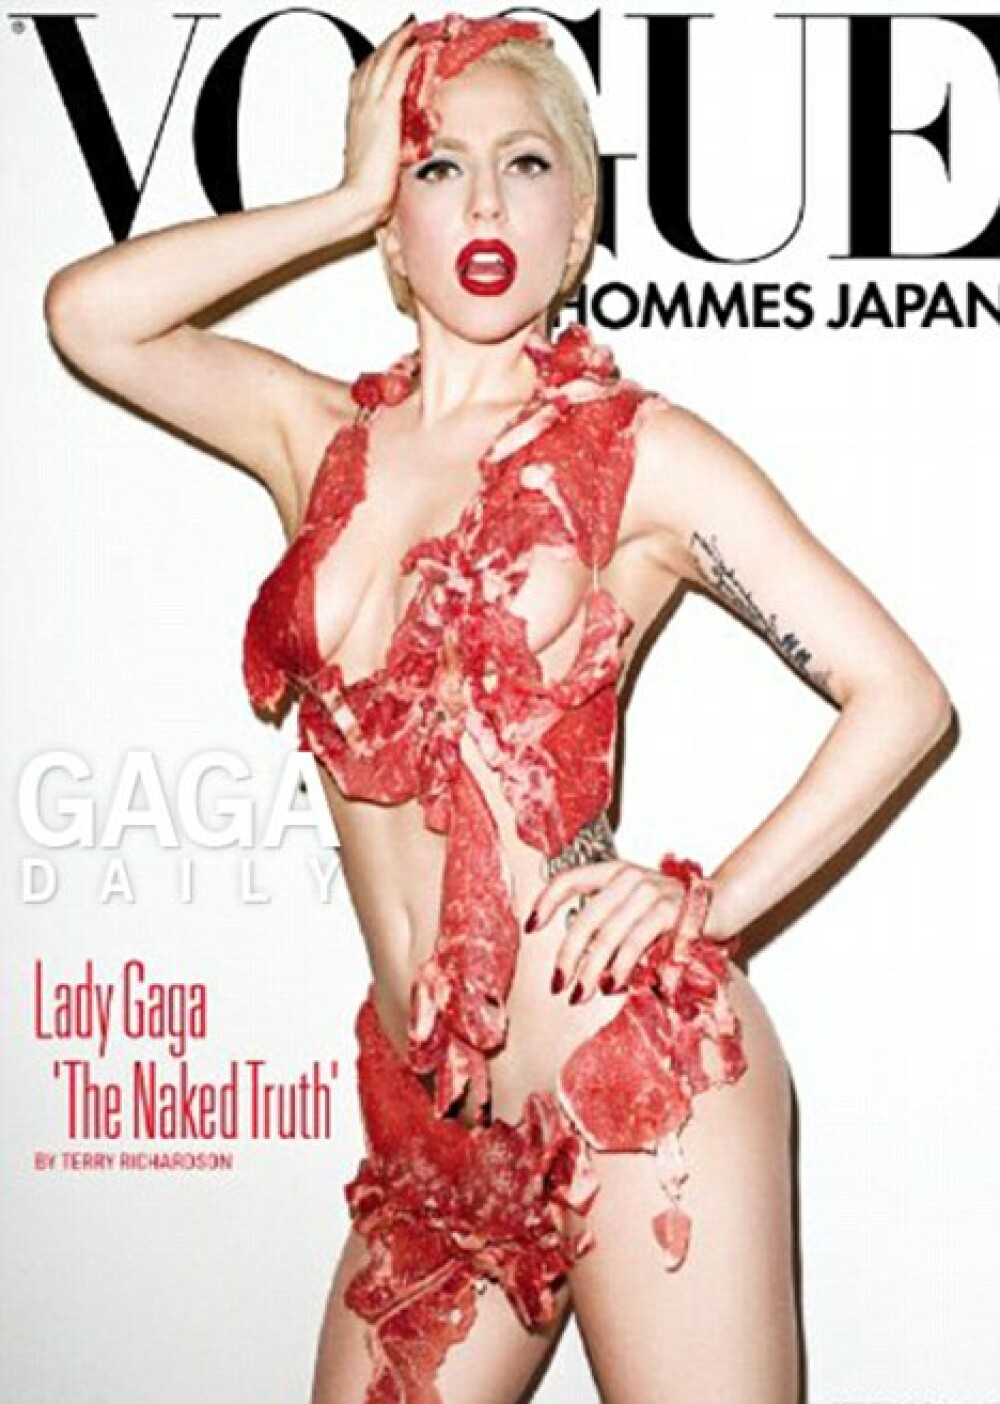 Viorica din Clejani= Lady Gaga. Uite-o in rochie din 20 de kg de carne FOTO - Imaginea 1